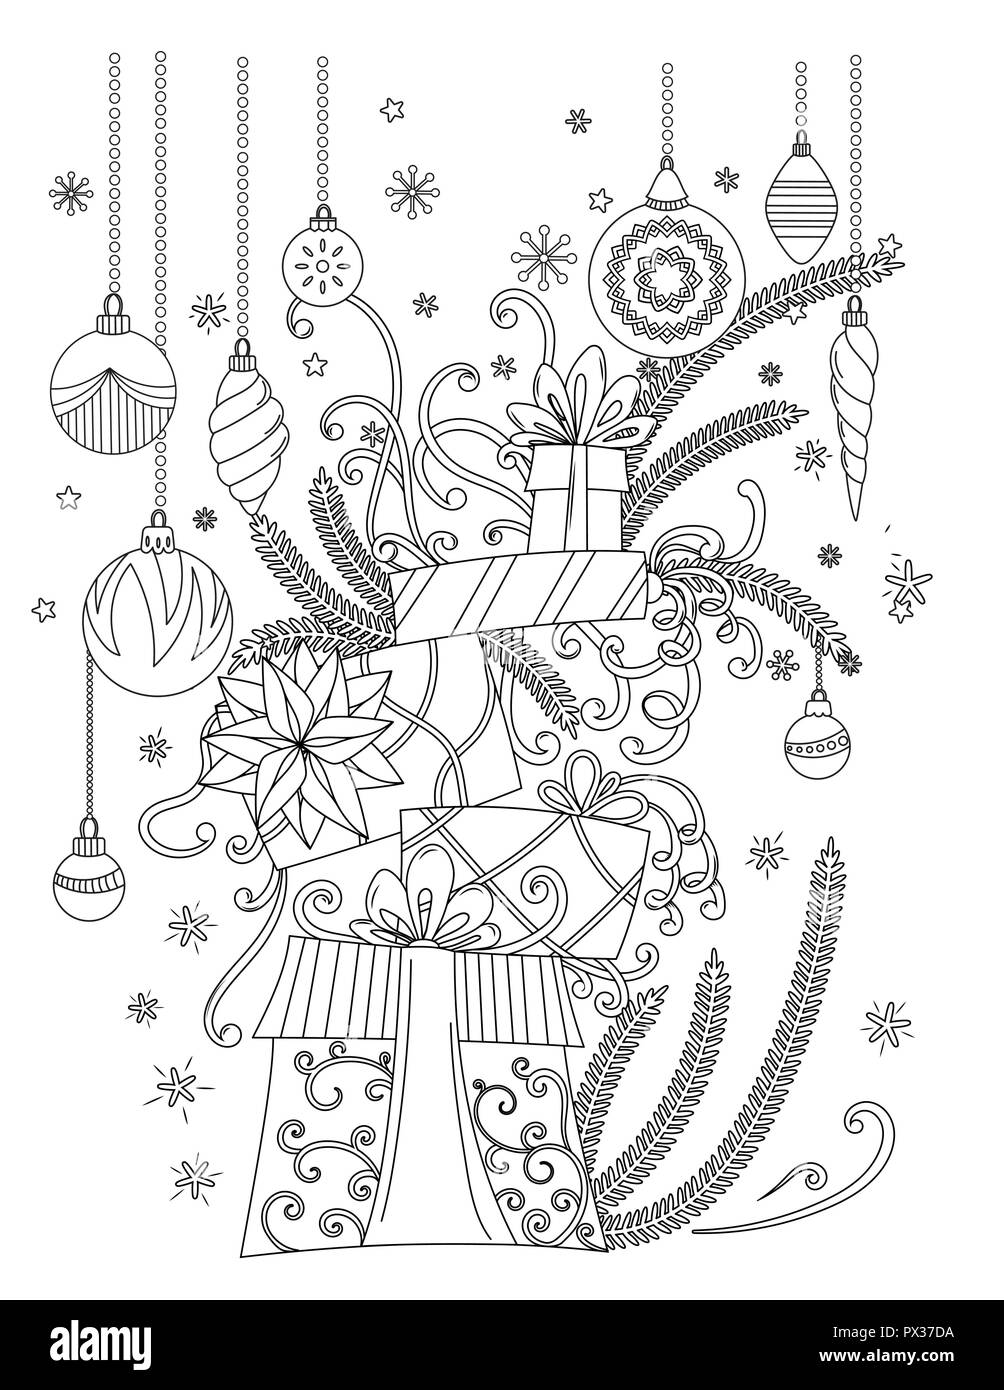 Buon Natale - Libro da Colorare per Adulti - 40meravigliose immagini da  colorare